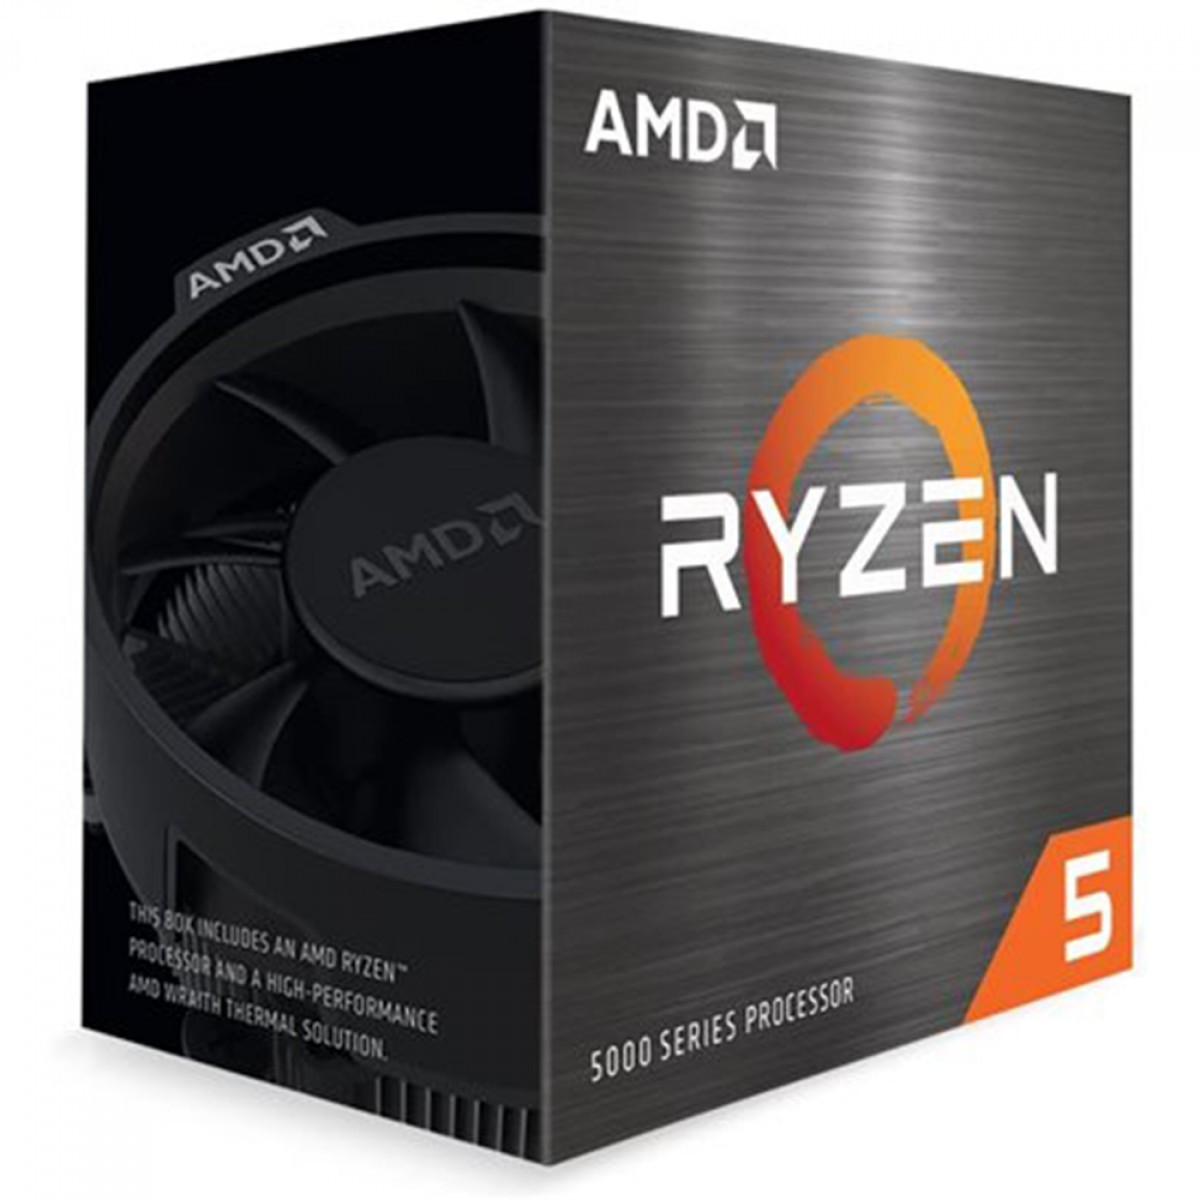 Kit Upgrade, AMD Ryzen 5 4600G, Placa Mãe MAXSUN B550M MS-Terminator, Memória DDR4 16GB (2x8GB) 